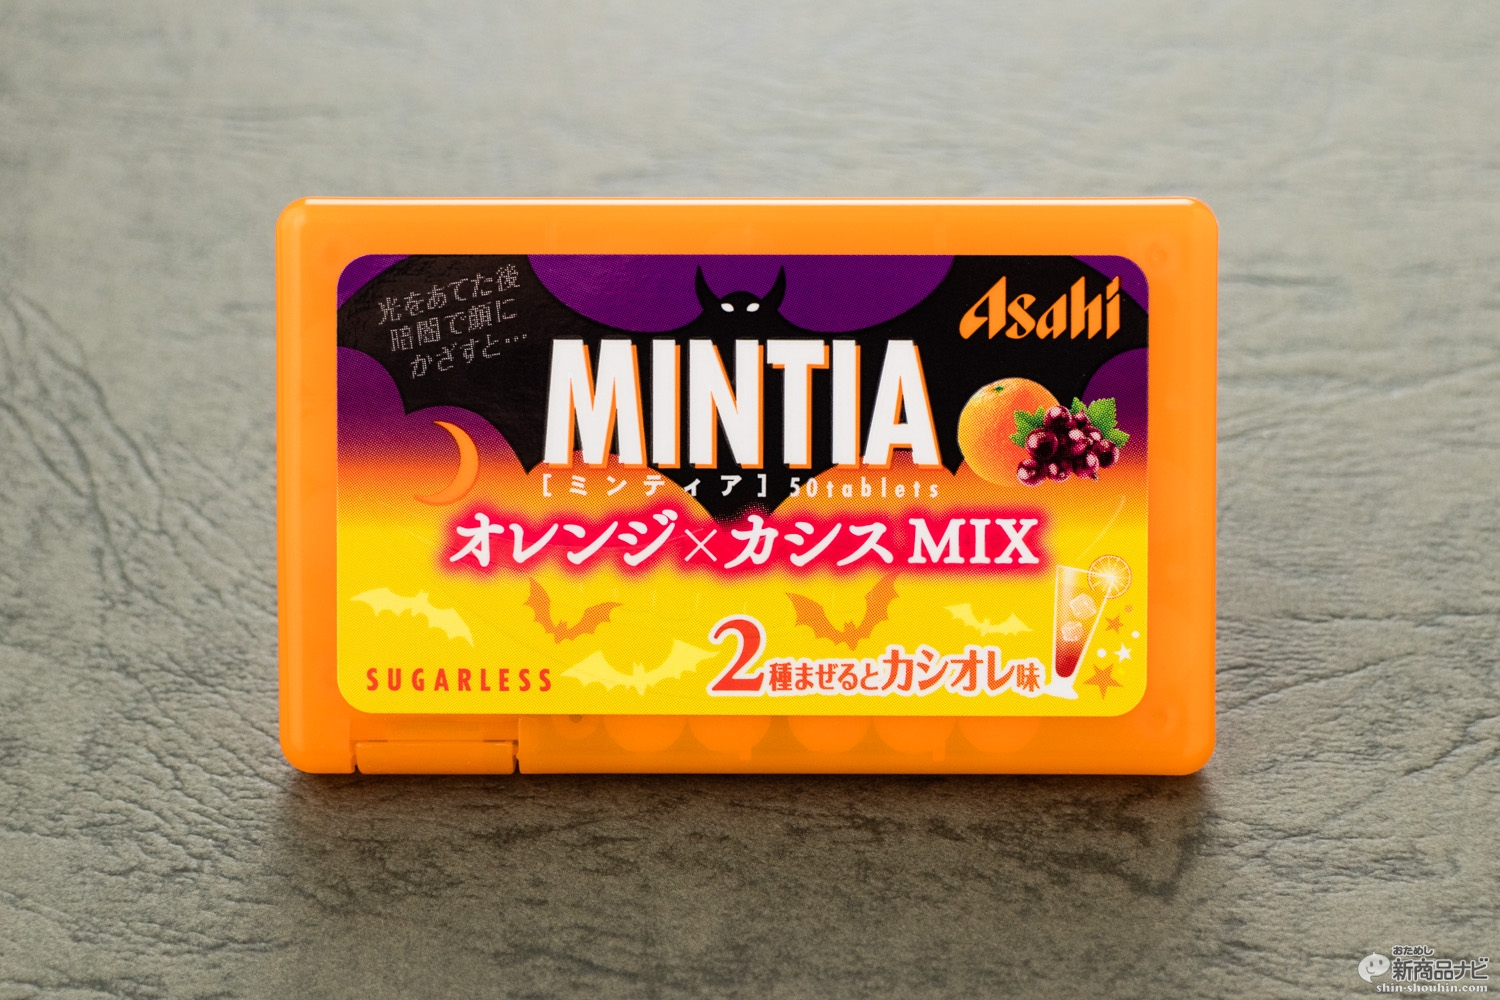 おためし新商品ナビ Blog Archive ミンティア 史上初 2つの味が楽しめる オレンジ カシスmix は ハロウィン仕様の光るパッケージが楽しい